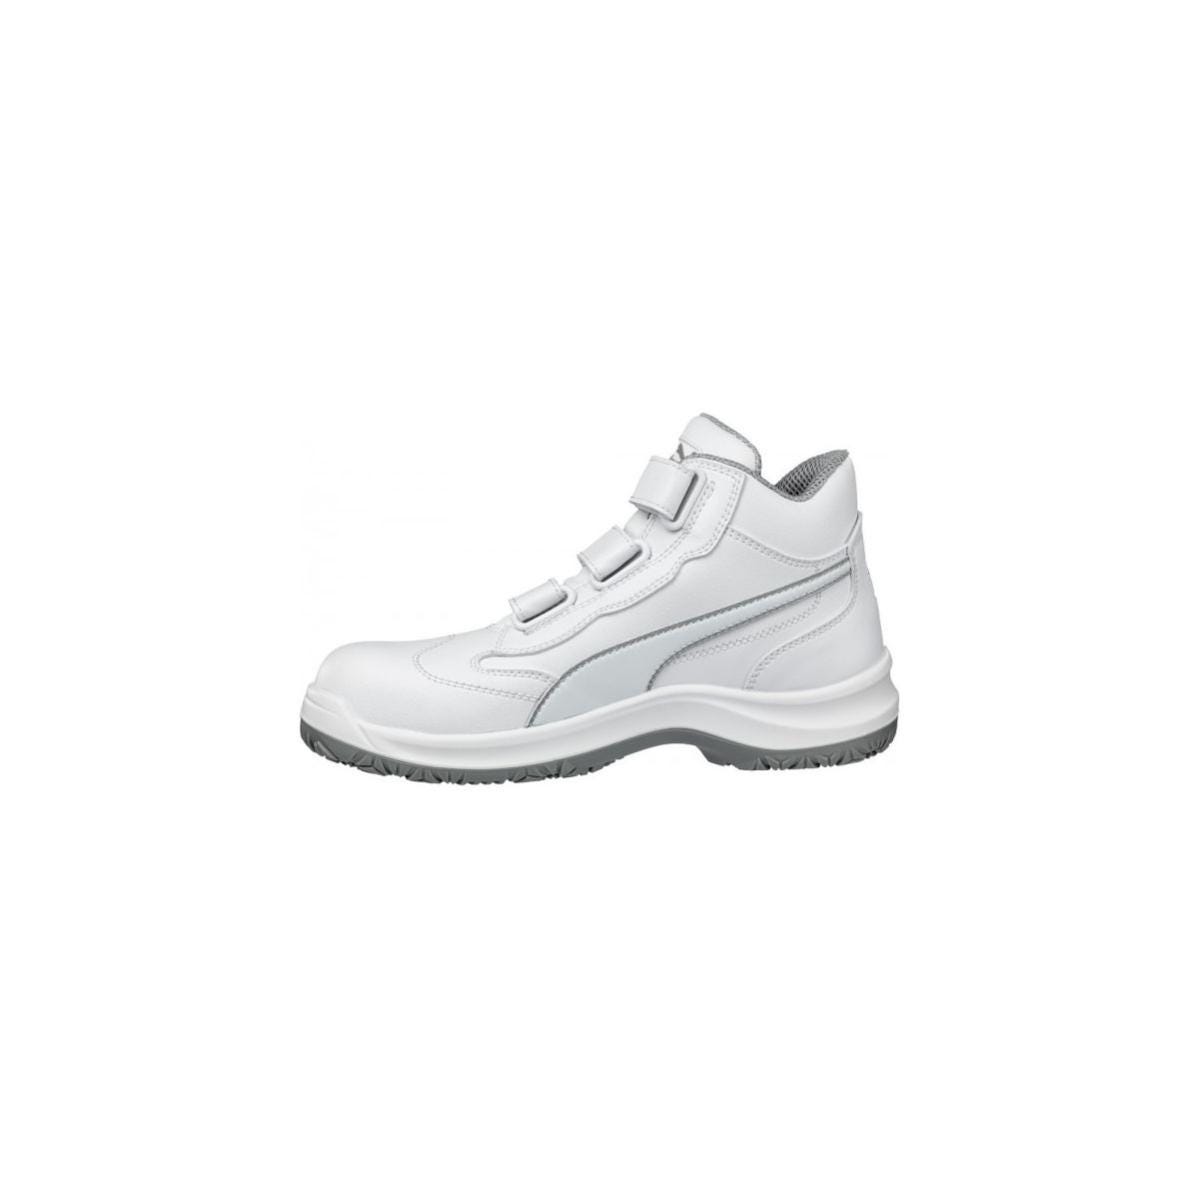 Chaussures de sécurité Absolute Mid S2 Blanc - Puma - Taille 42 4